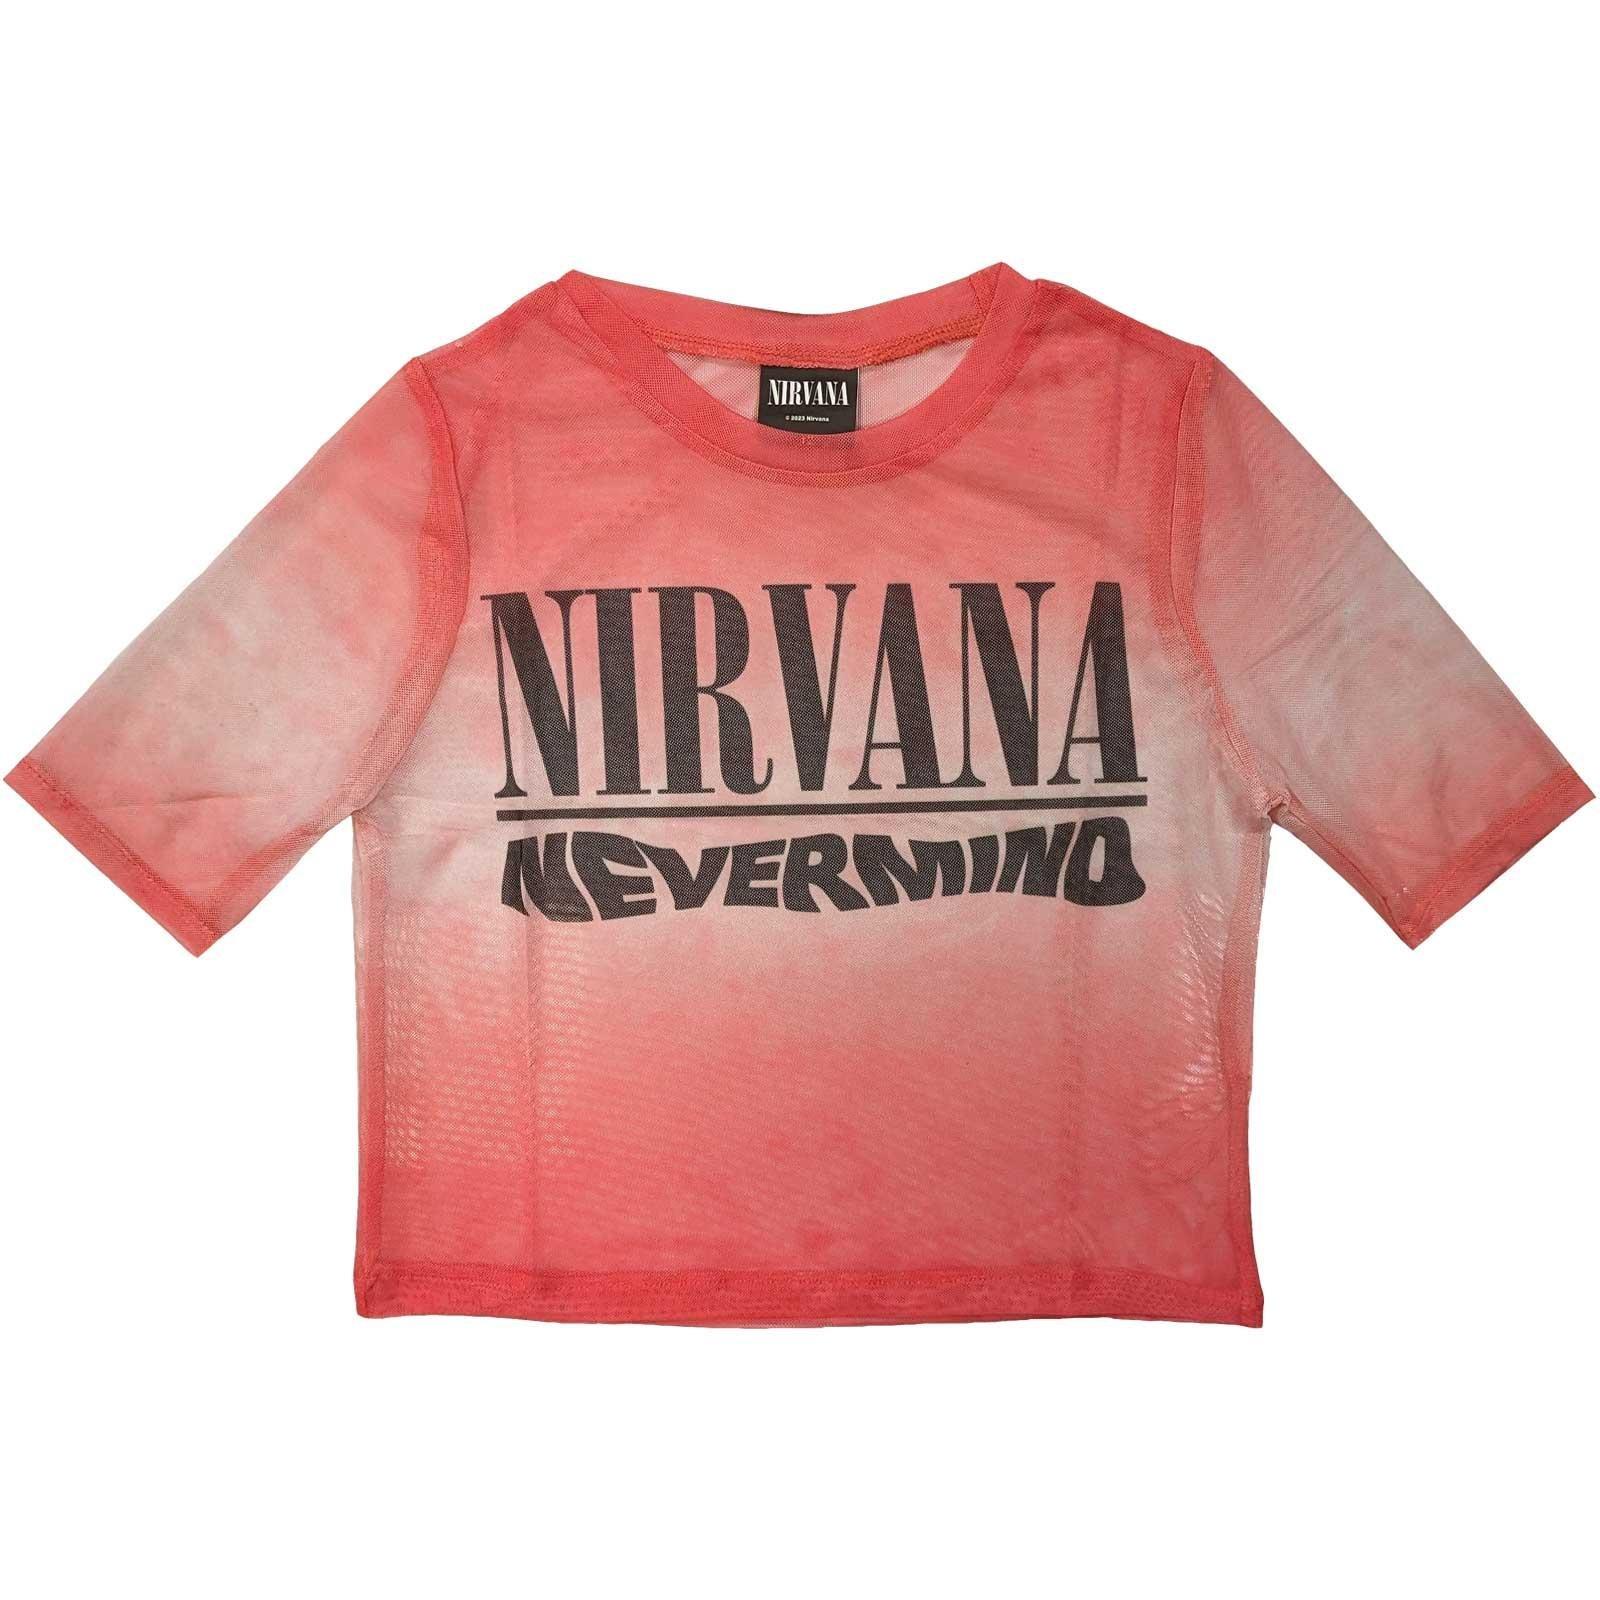 Nevermind Kurzes Top Logo Damen Rot Bunt M von Nirvana